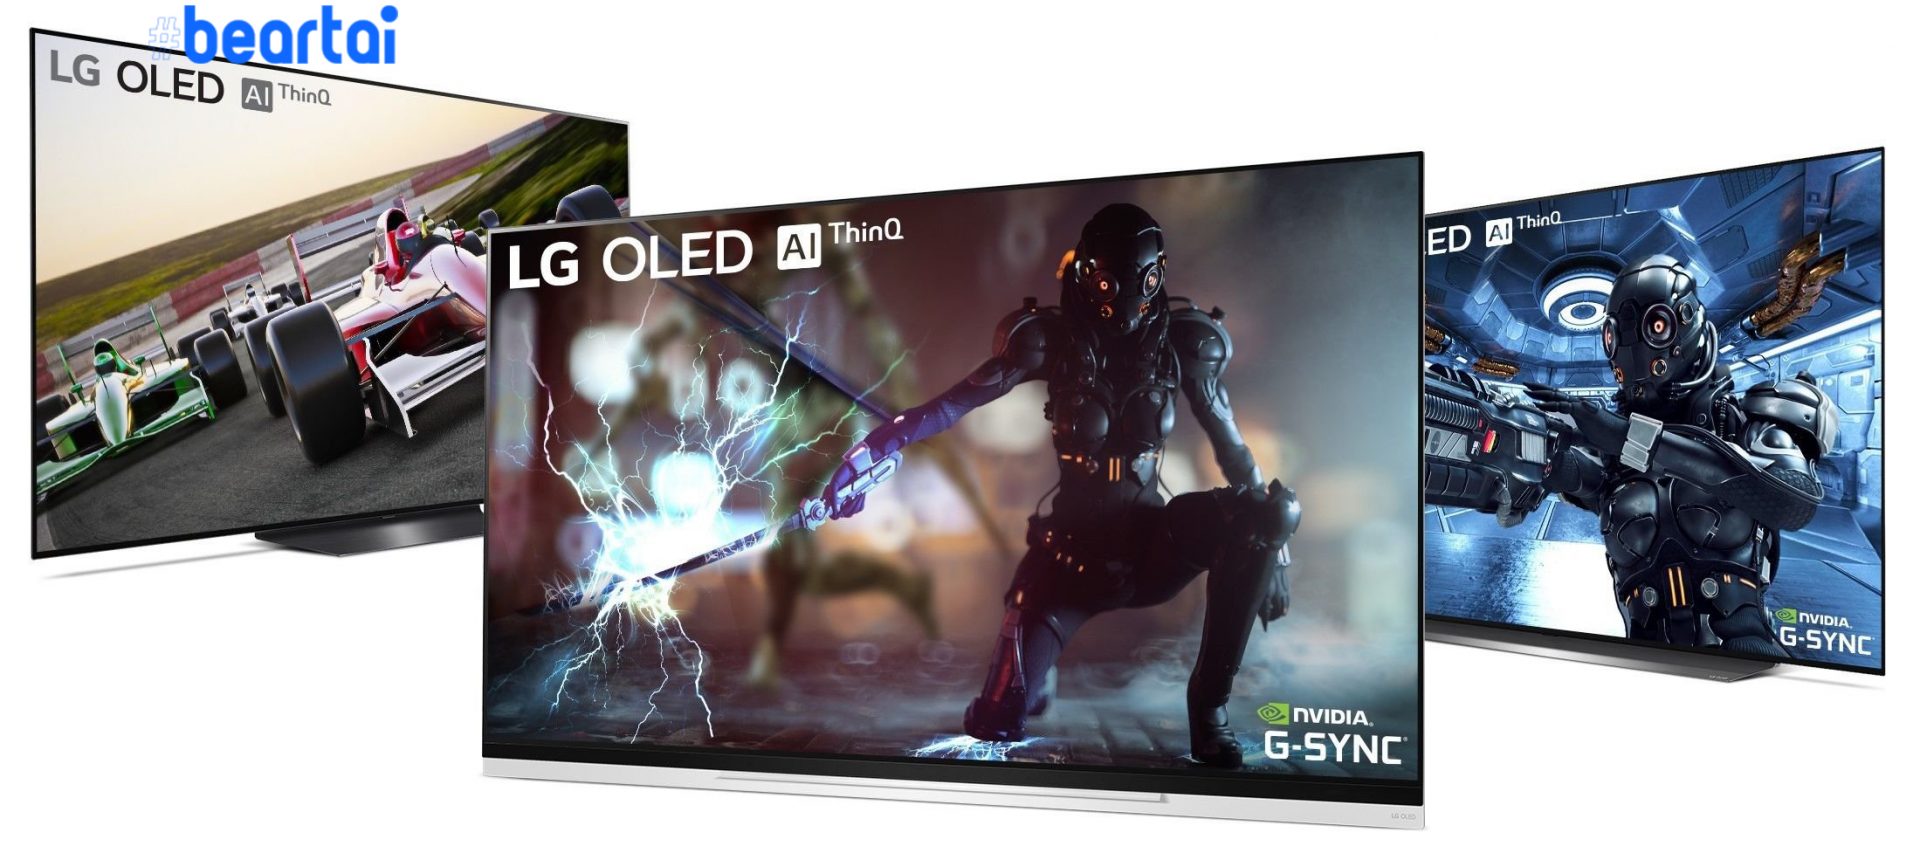 เล่นเกมด้วยทีวี LG OLED 2019 ได้ราบรื่นโดยเริ่มให้อัปเดตเฟิร์มแวร์รองรับ G-SYNC ในสัปดาห์นี้